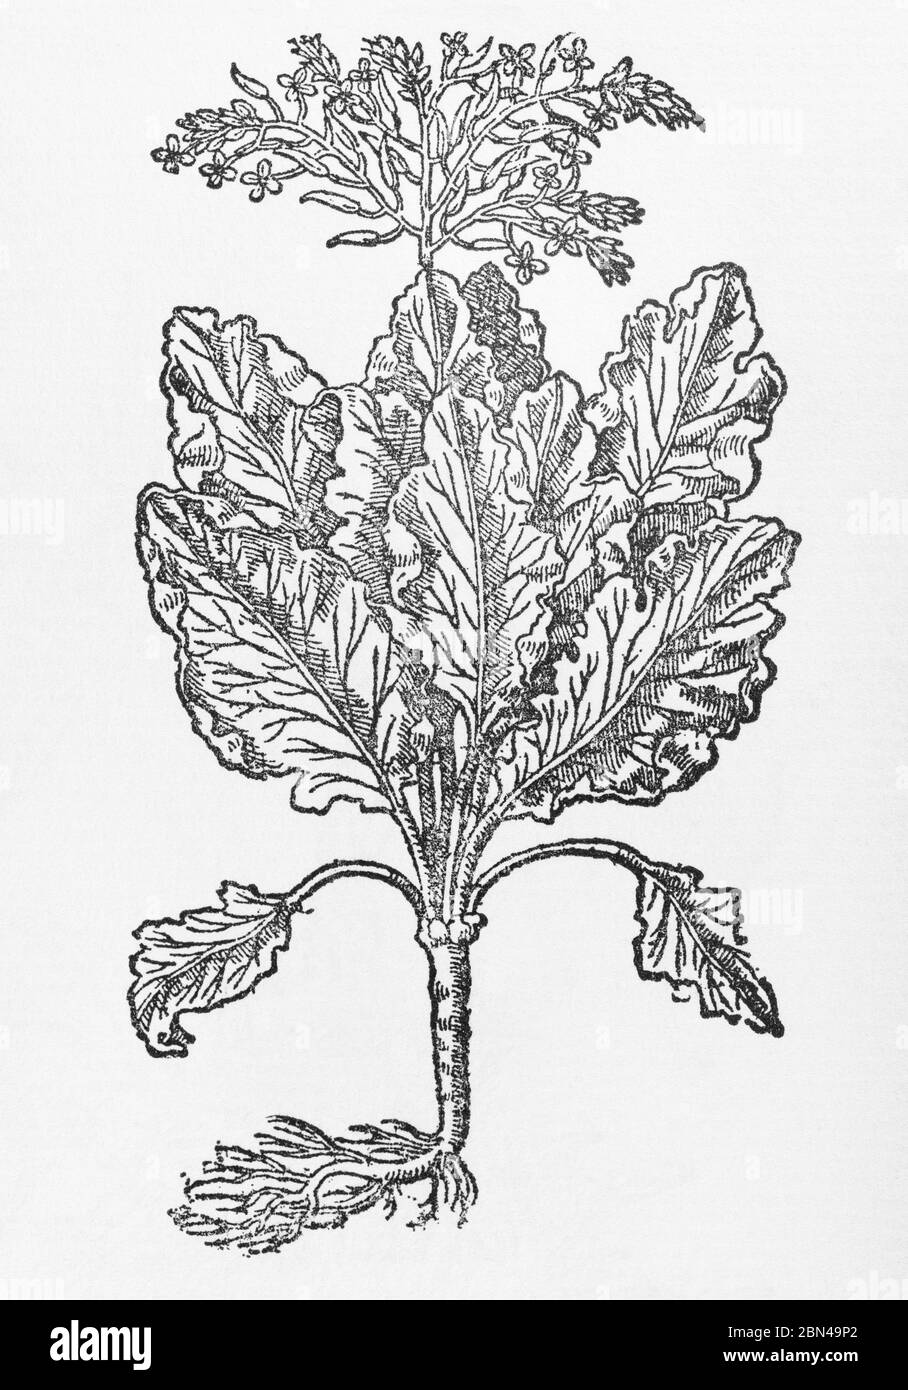 English Sea Colewart pianta di legno di Gerarde Herball, Storia delle piante. Si riferisce a esso come Brassica marina Anglica. P248 Foto Stock